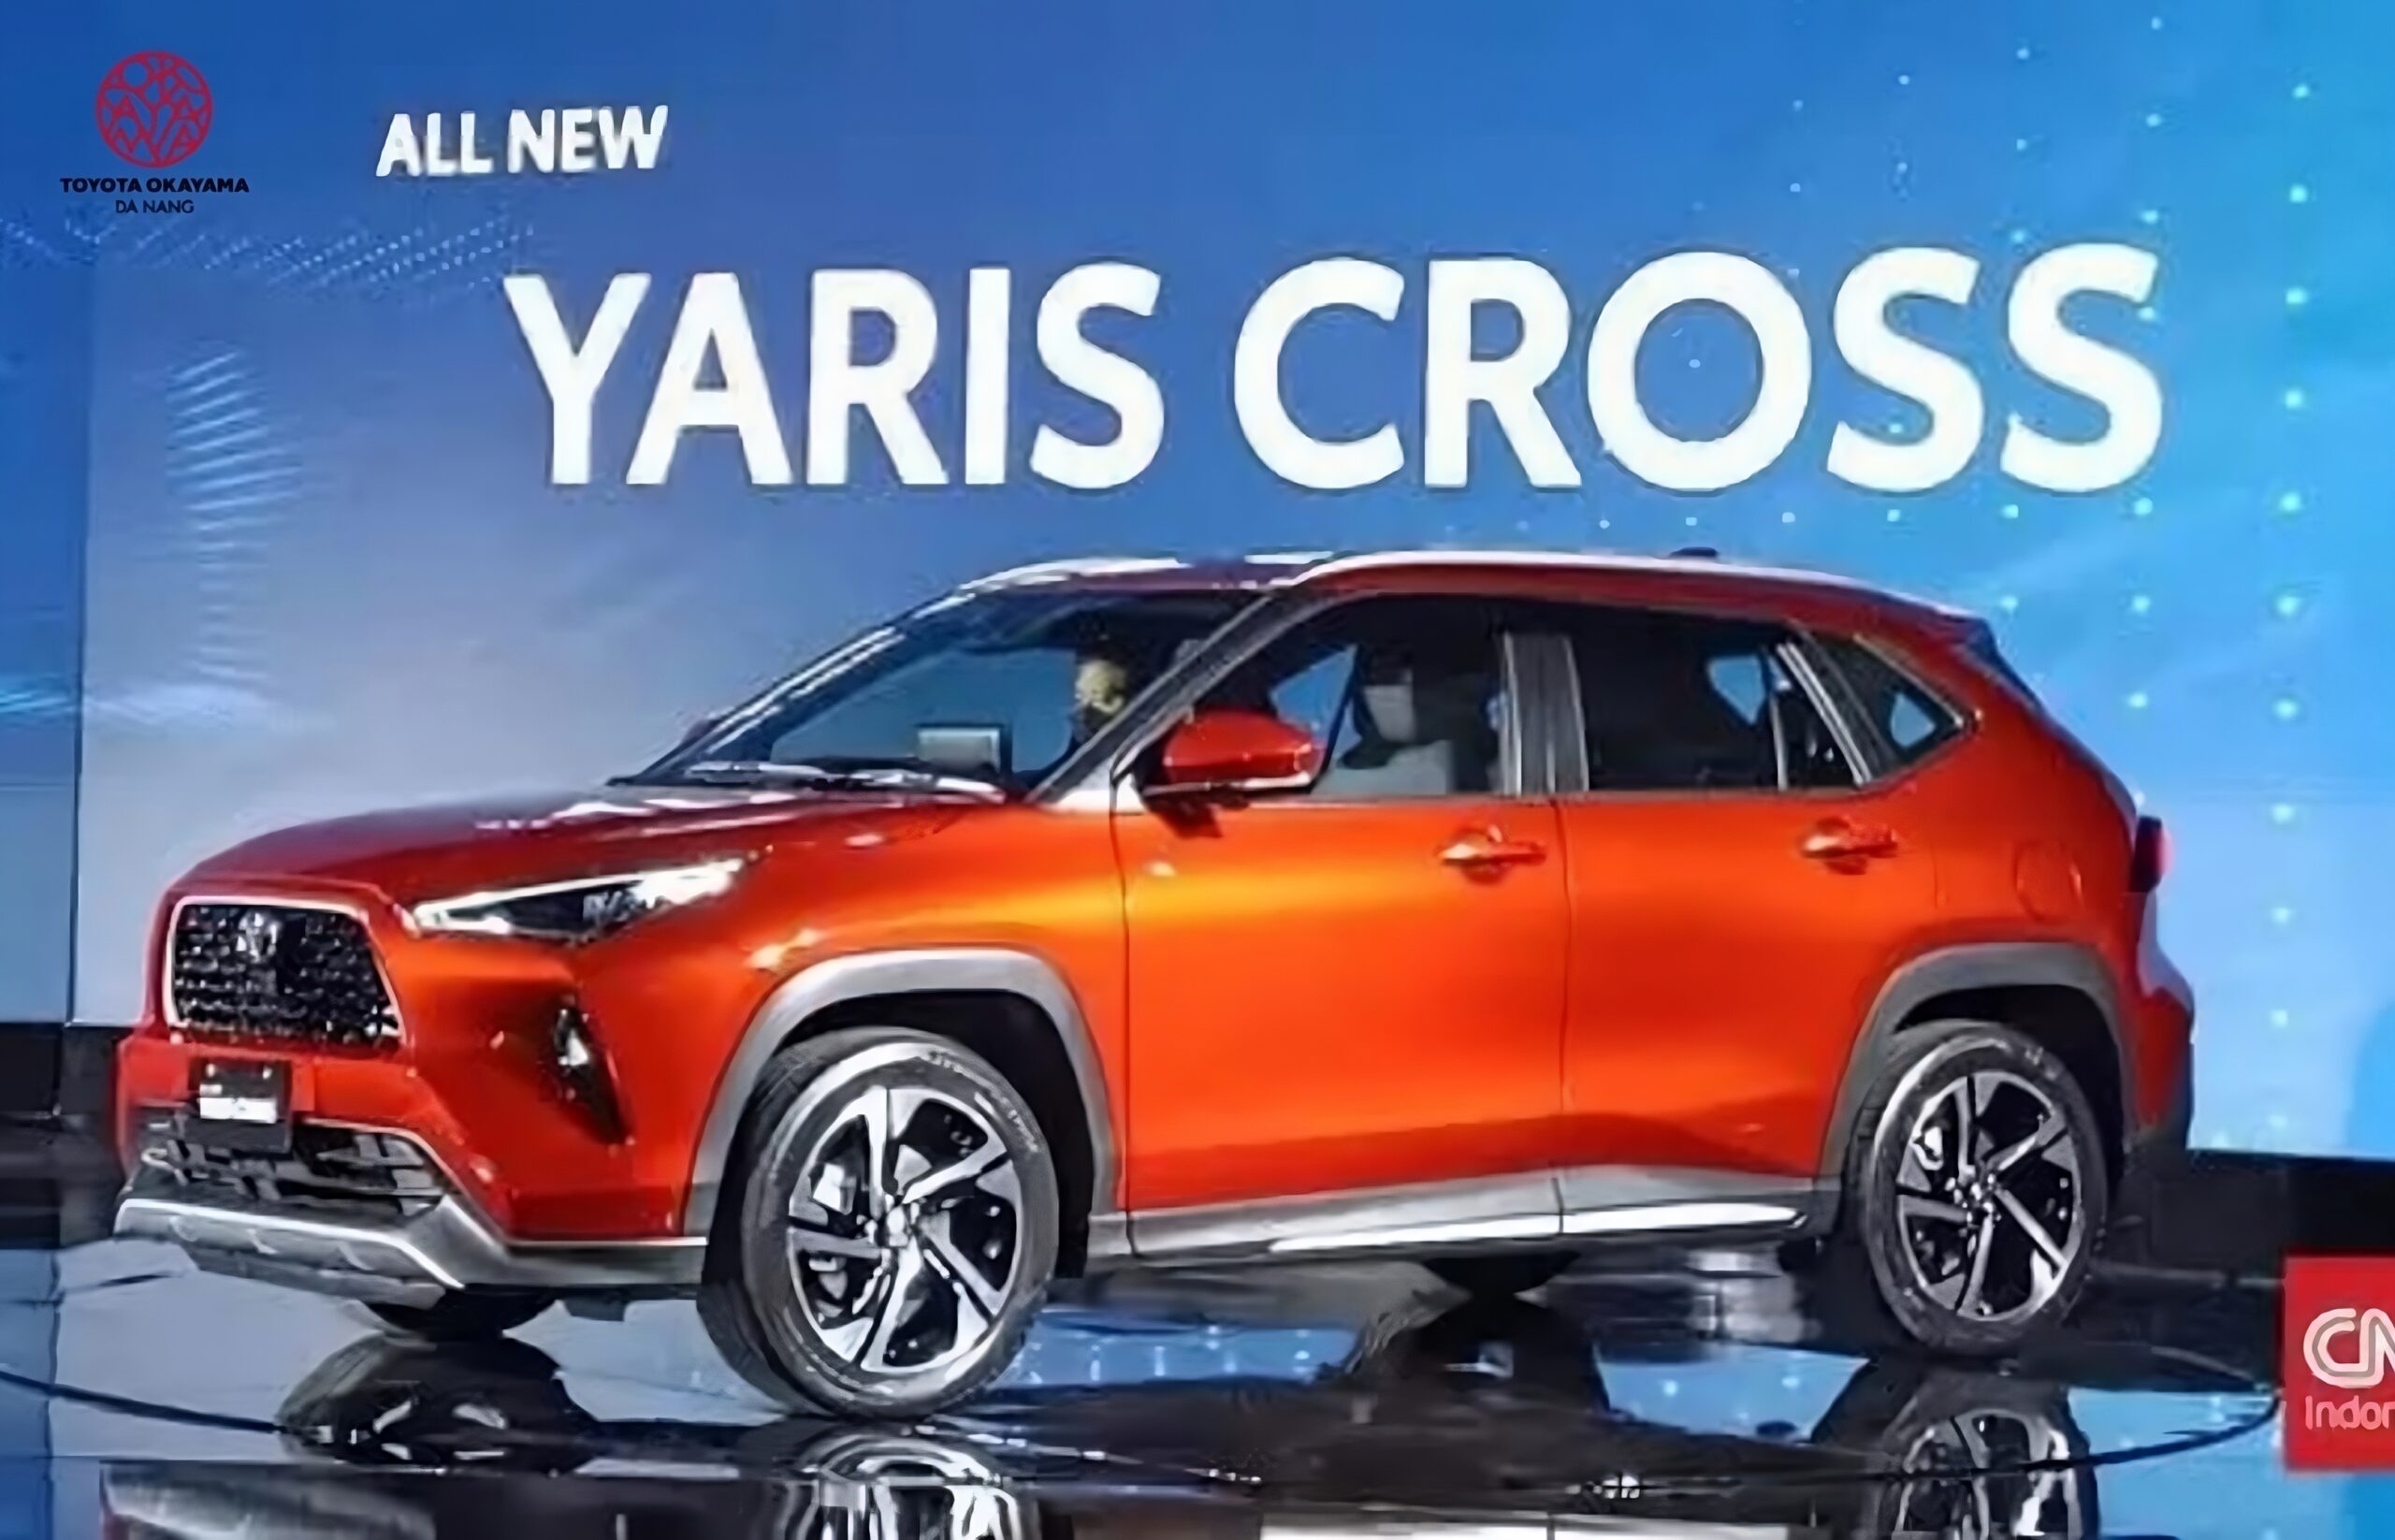 Toyota Yaris Cross cam chắc chắn là màu phù hợp với người mệnh hỏa